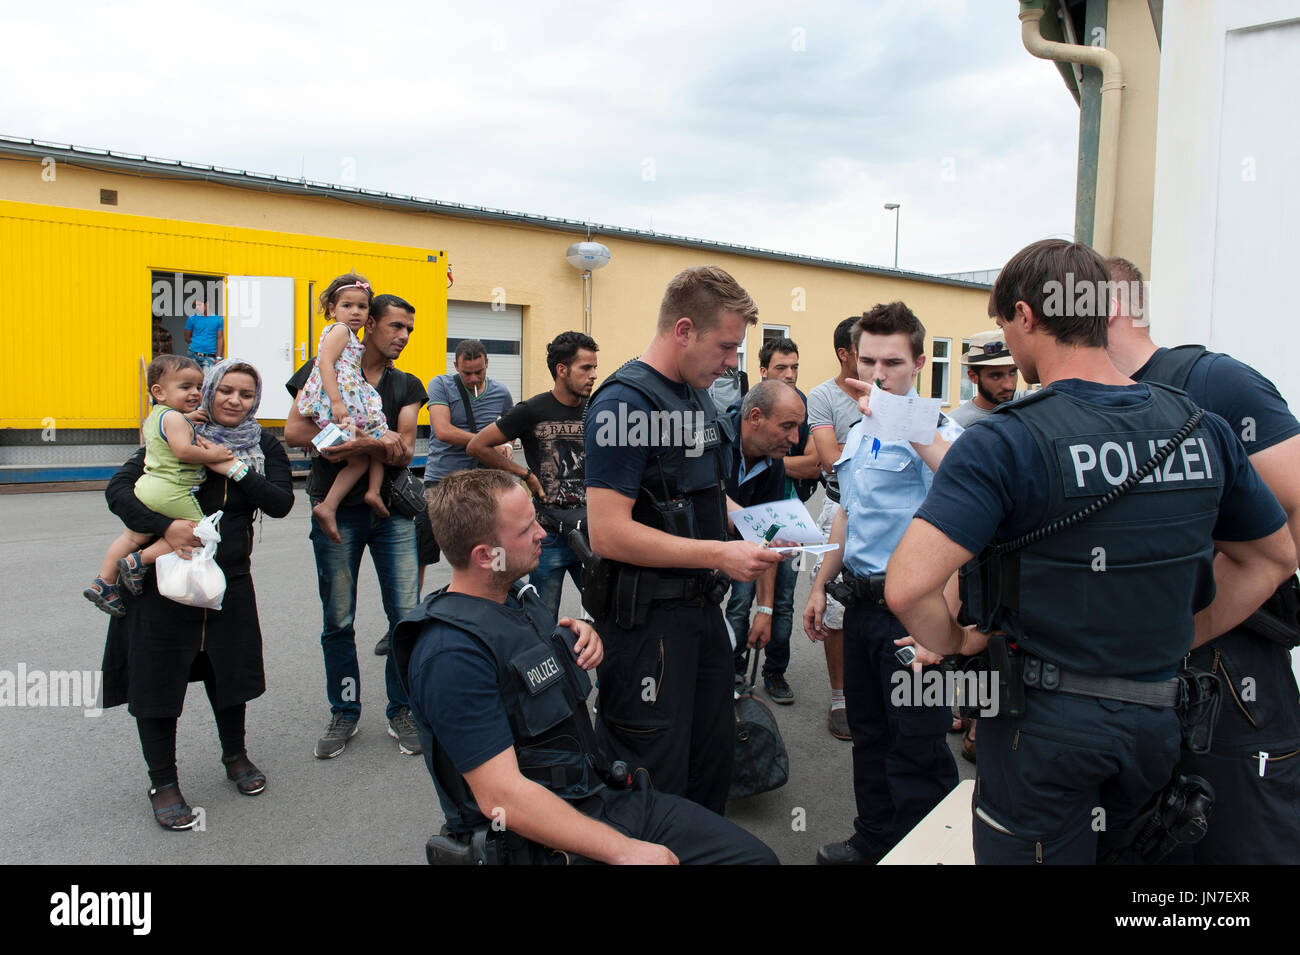 Passau, Allemagne - 1er août 2015 : La police prend les informations de réfugiés dans le centre d'enregistrement temporaire pour les migrants et les réfugiés. Banque D'Images